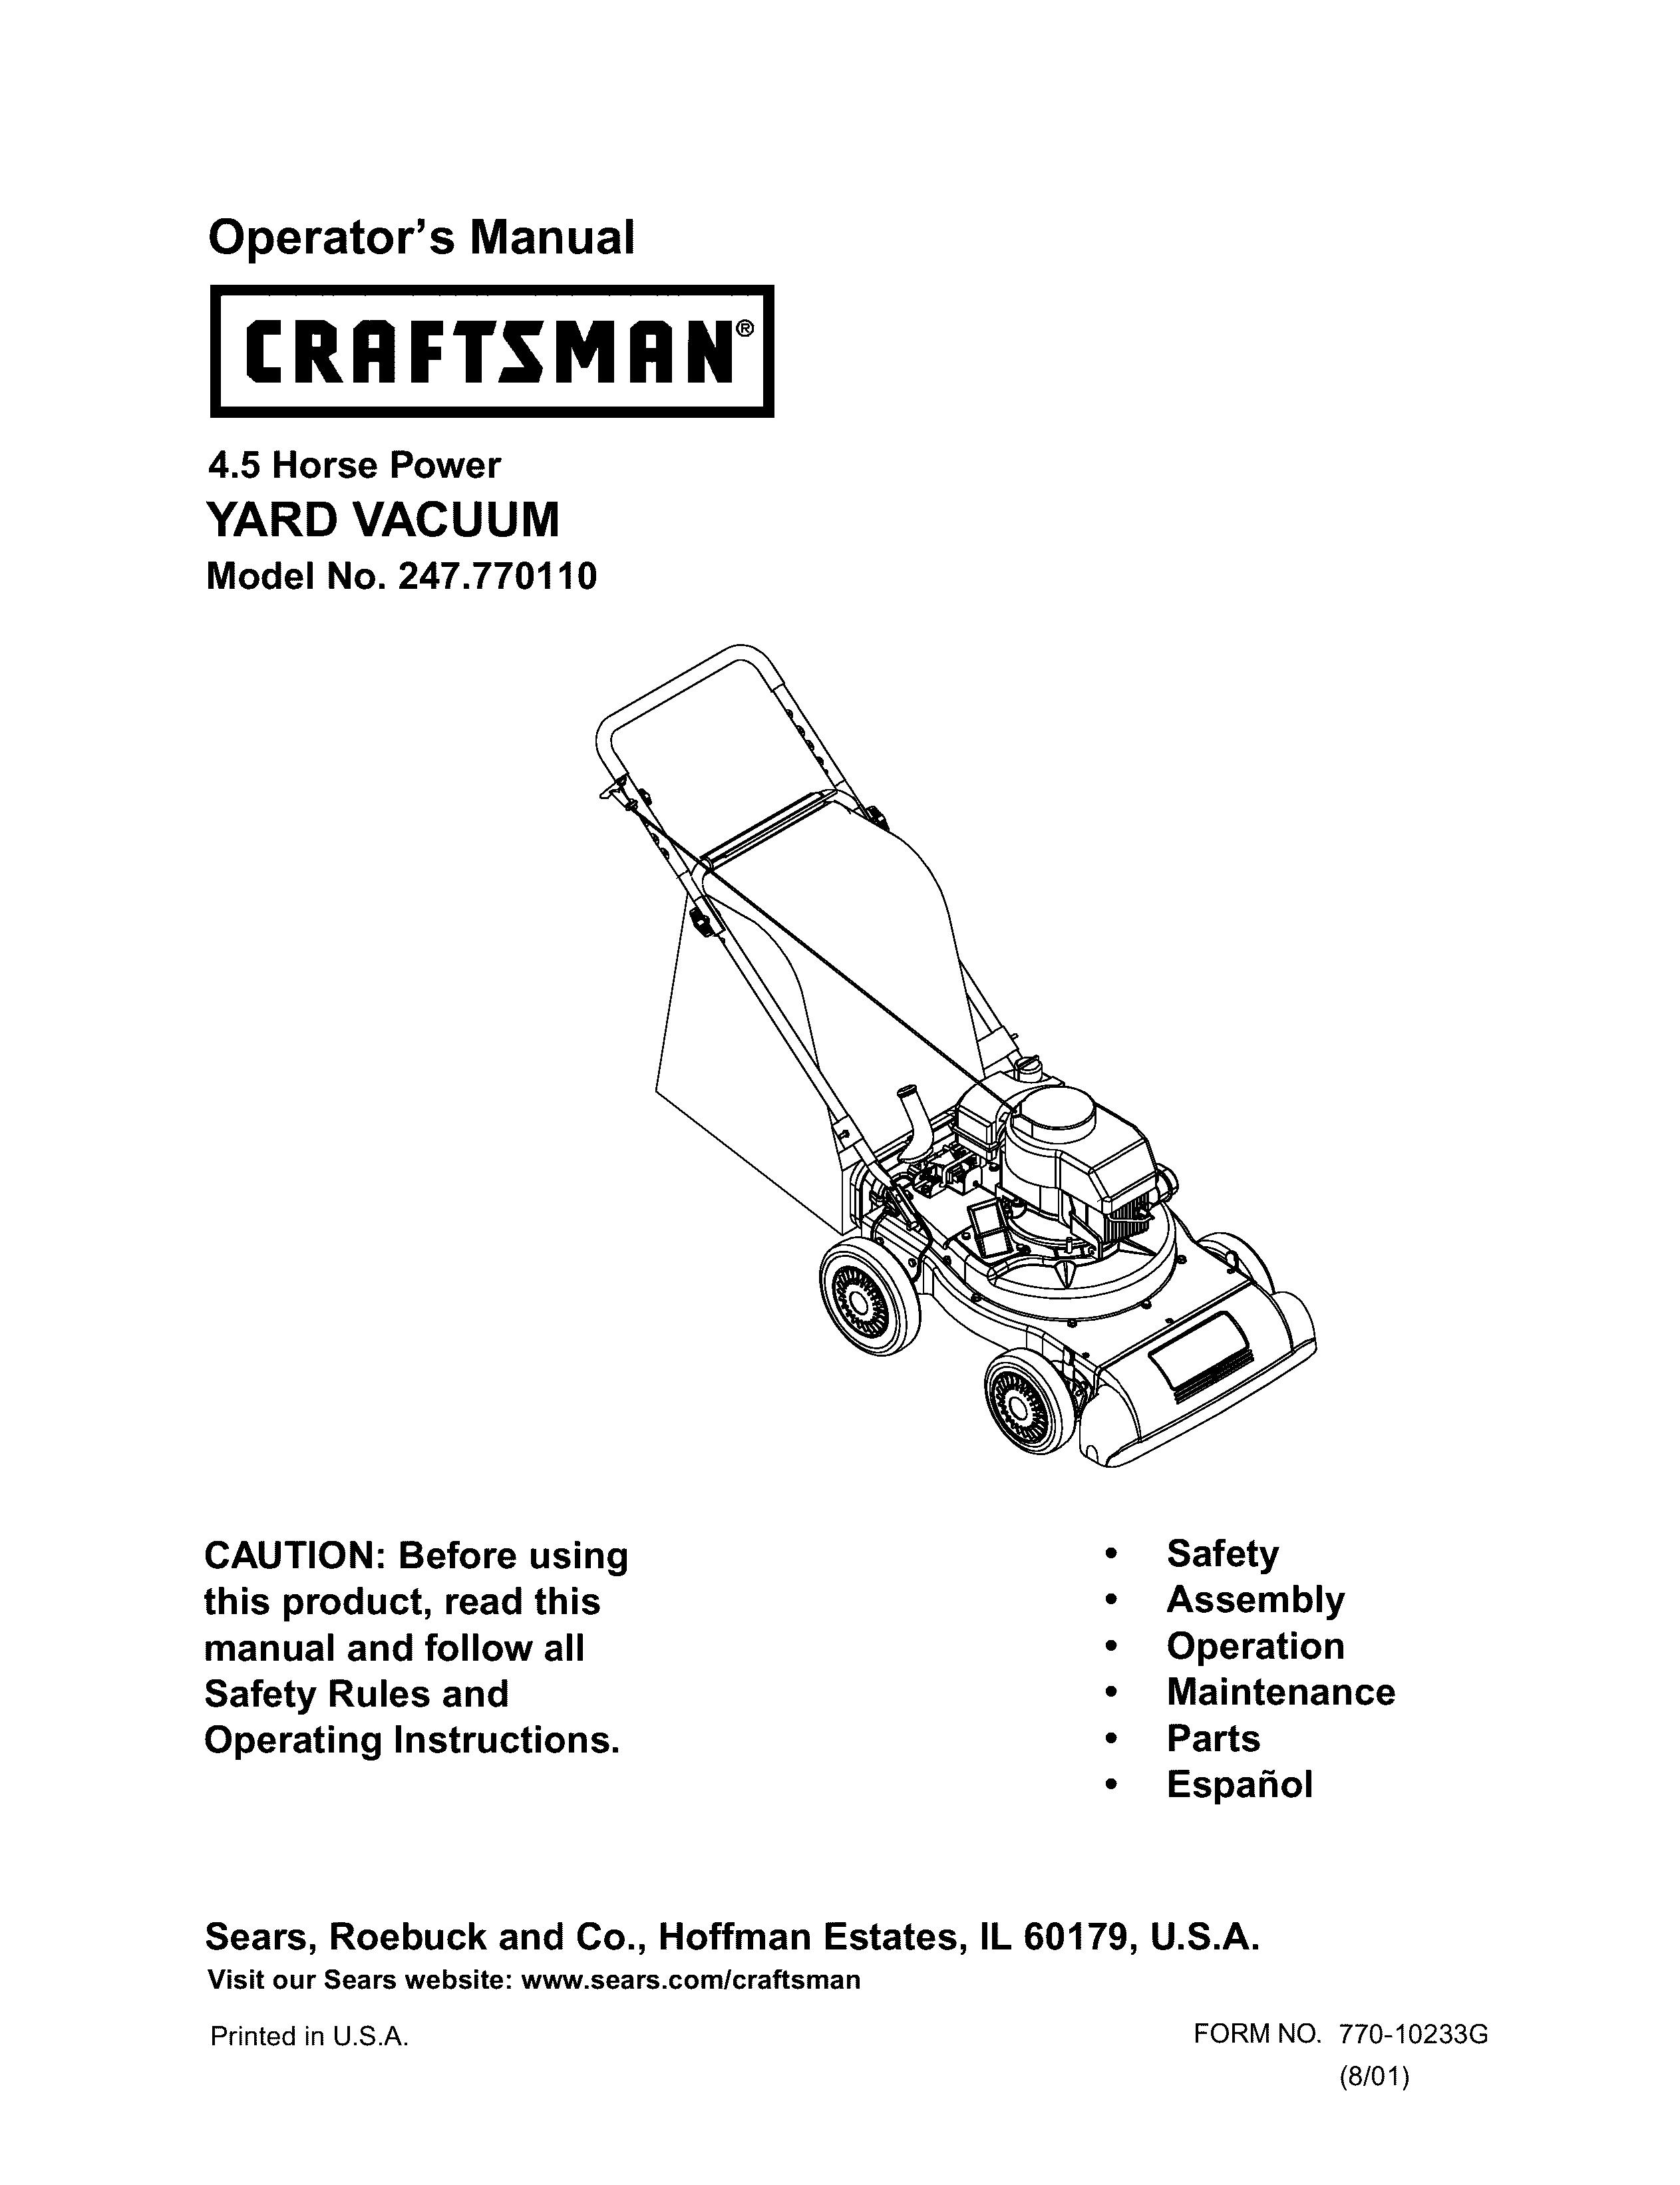 Craftsman 247.770110 Yard Vacuum User Manual